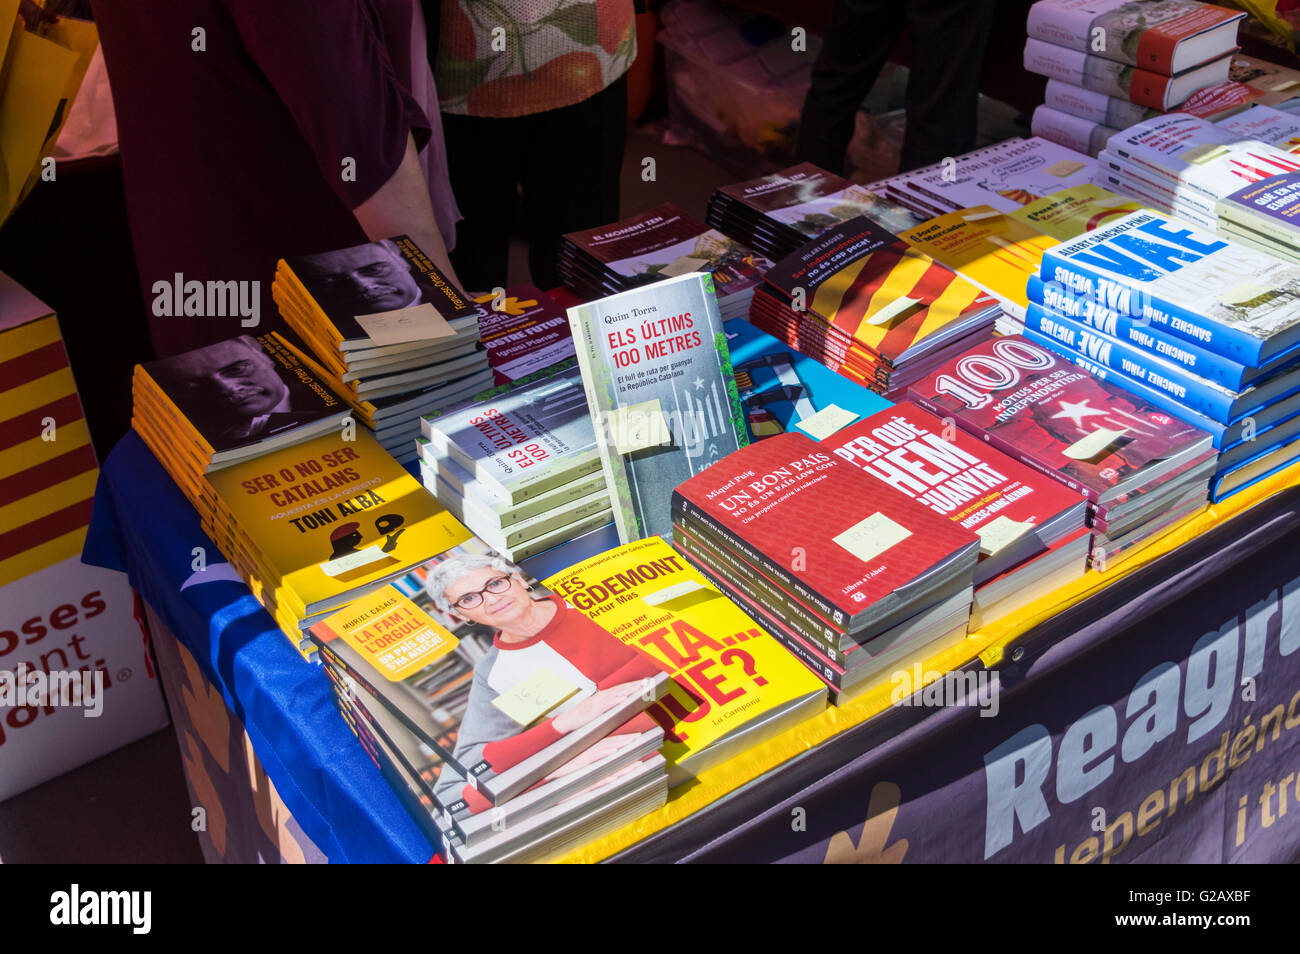 Libros sobre el nacionalismo catalán y la independencia de Cataluña en la pantalla en un stand al aire libre en Barcelona, Cataluña, España. Foto de stock